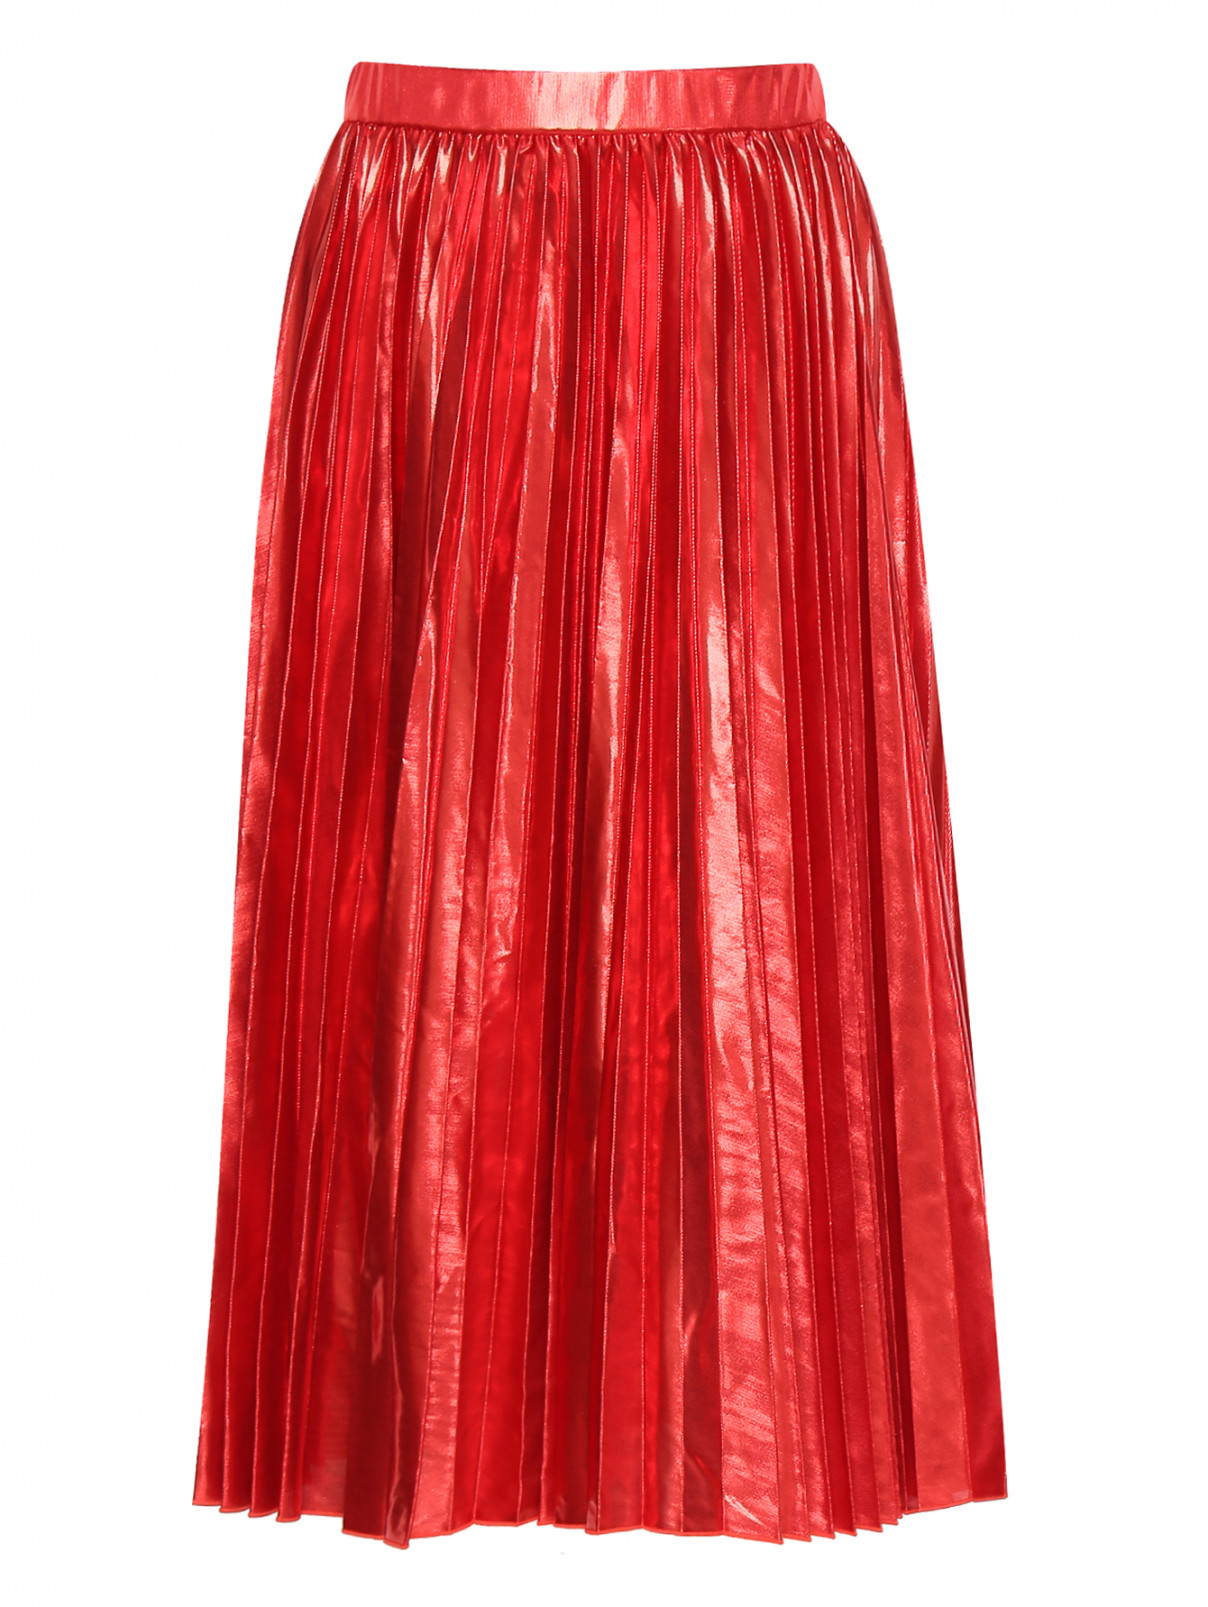 Юбка-миди плиссированная цвета металлик Max&Co  –  Общий вид  – Цвет:  Красный